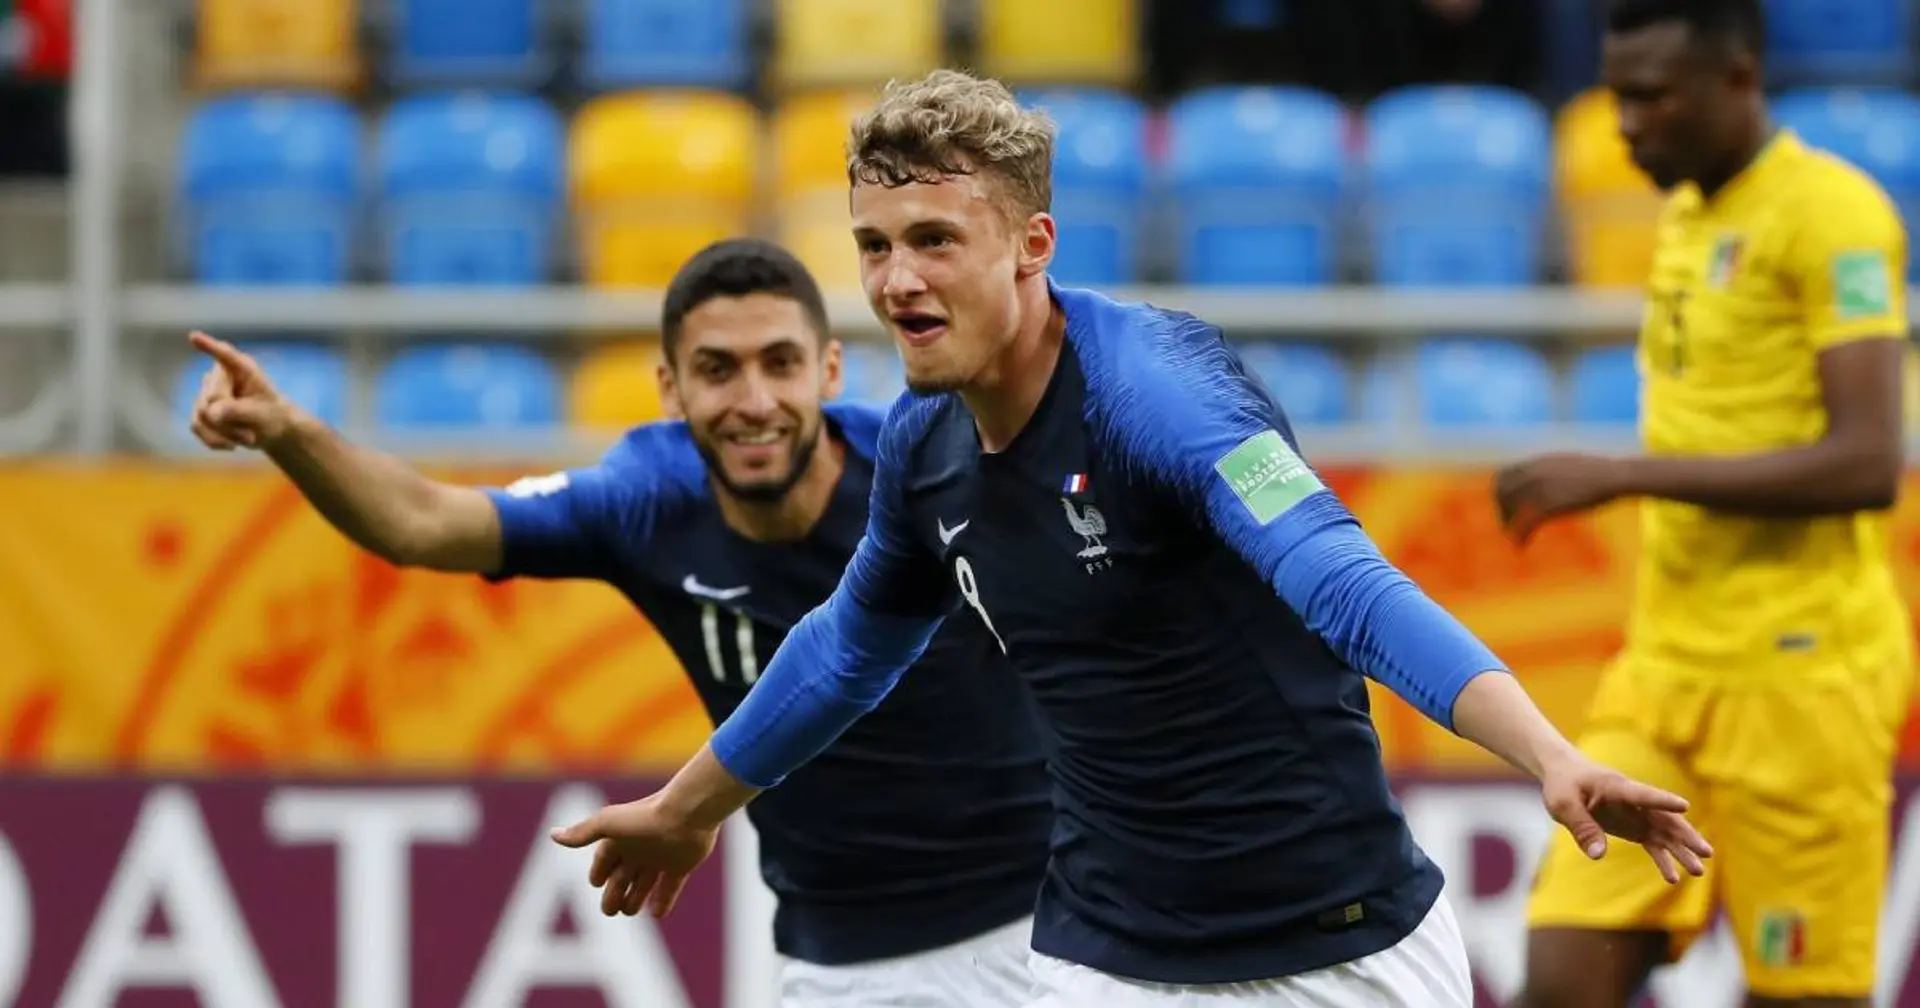 Cuisance: Mein Ziel ist es, für französische Nationalmannschaft zu spielen